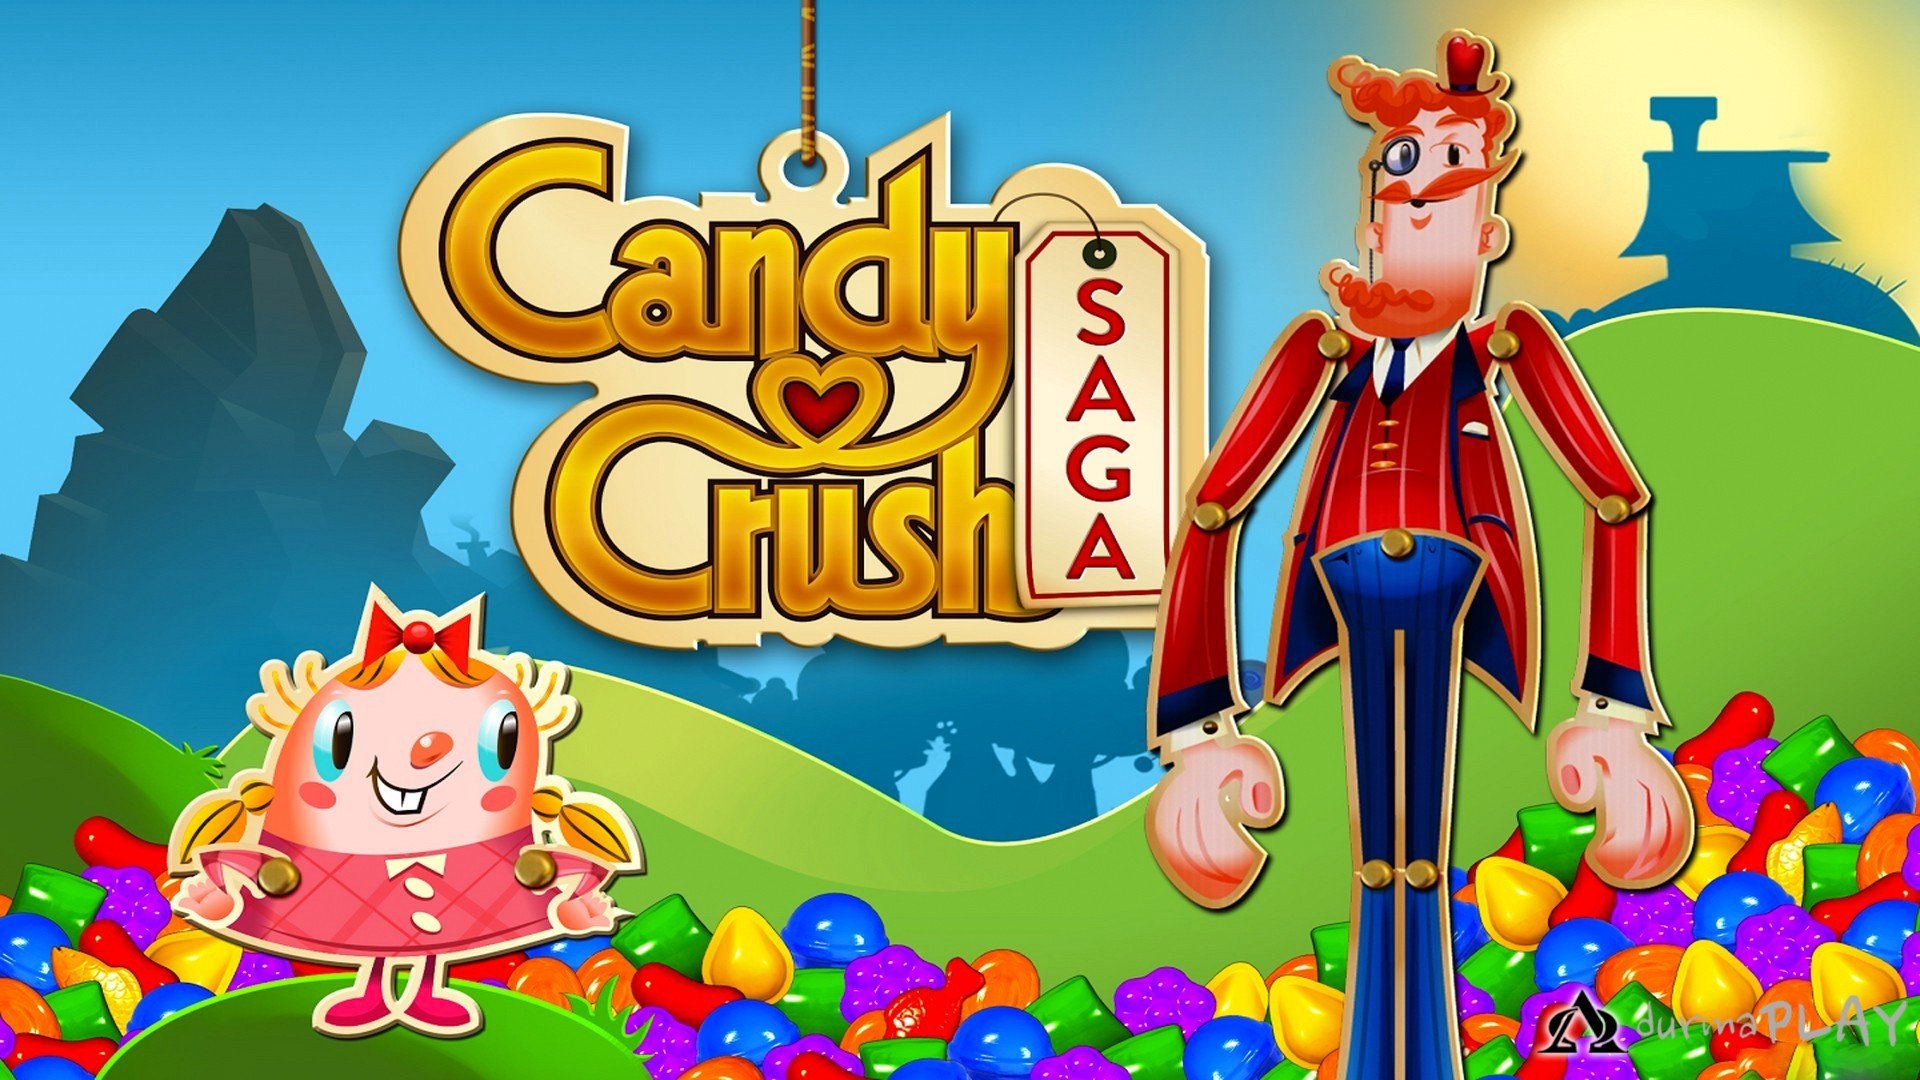 Los mejores fondos de pantalla de Candy Crush Saga para la pantalla del teléfono